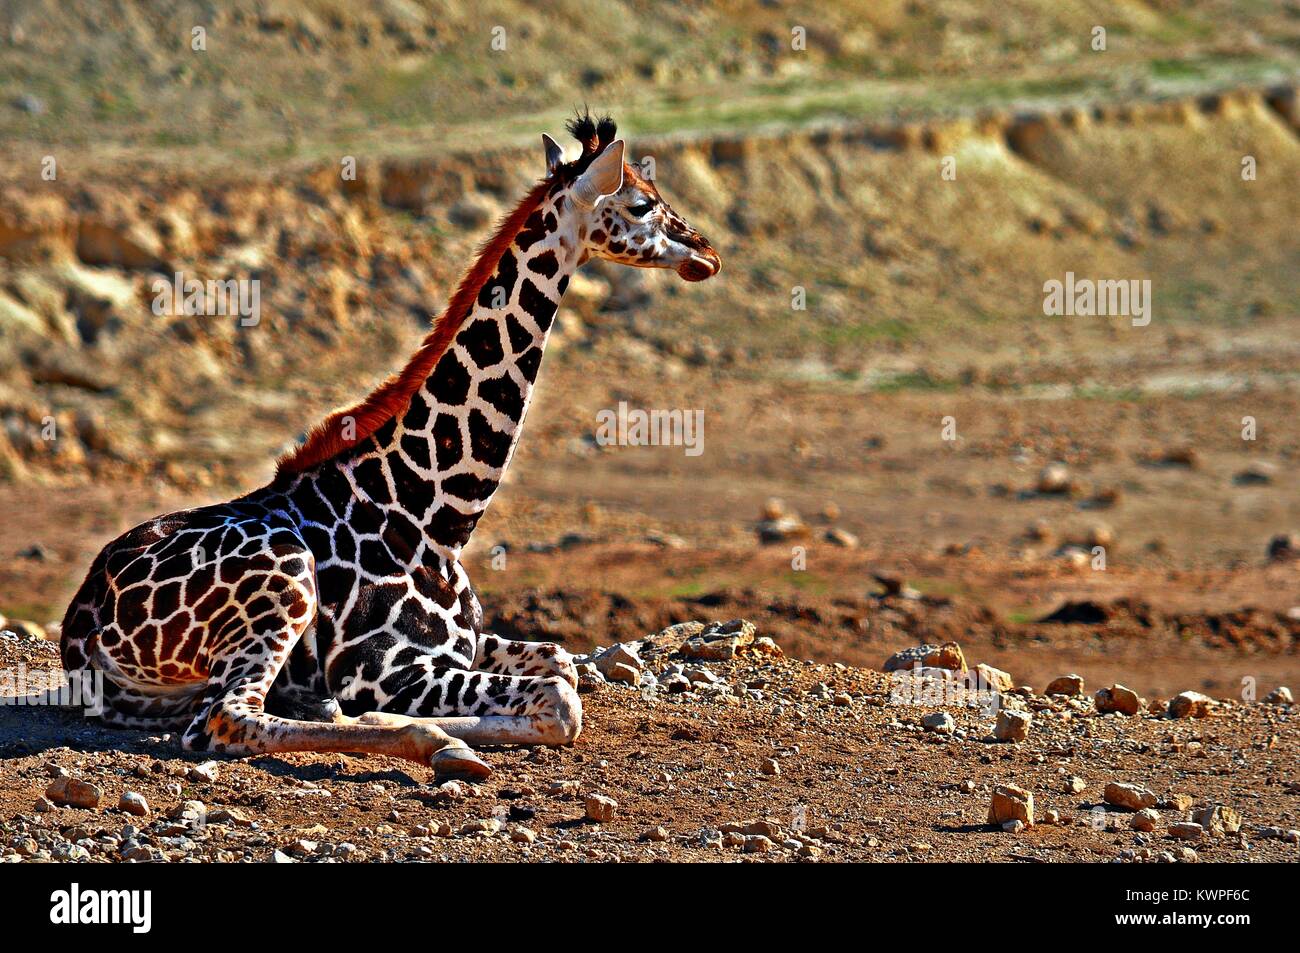 Bébé girafe assis sur le sable au sol Banque D'Images